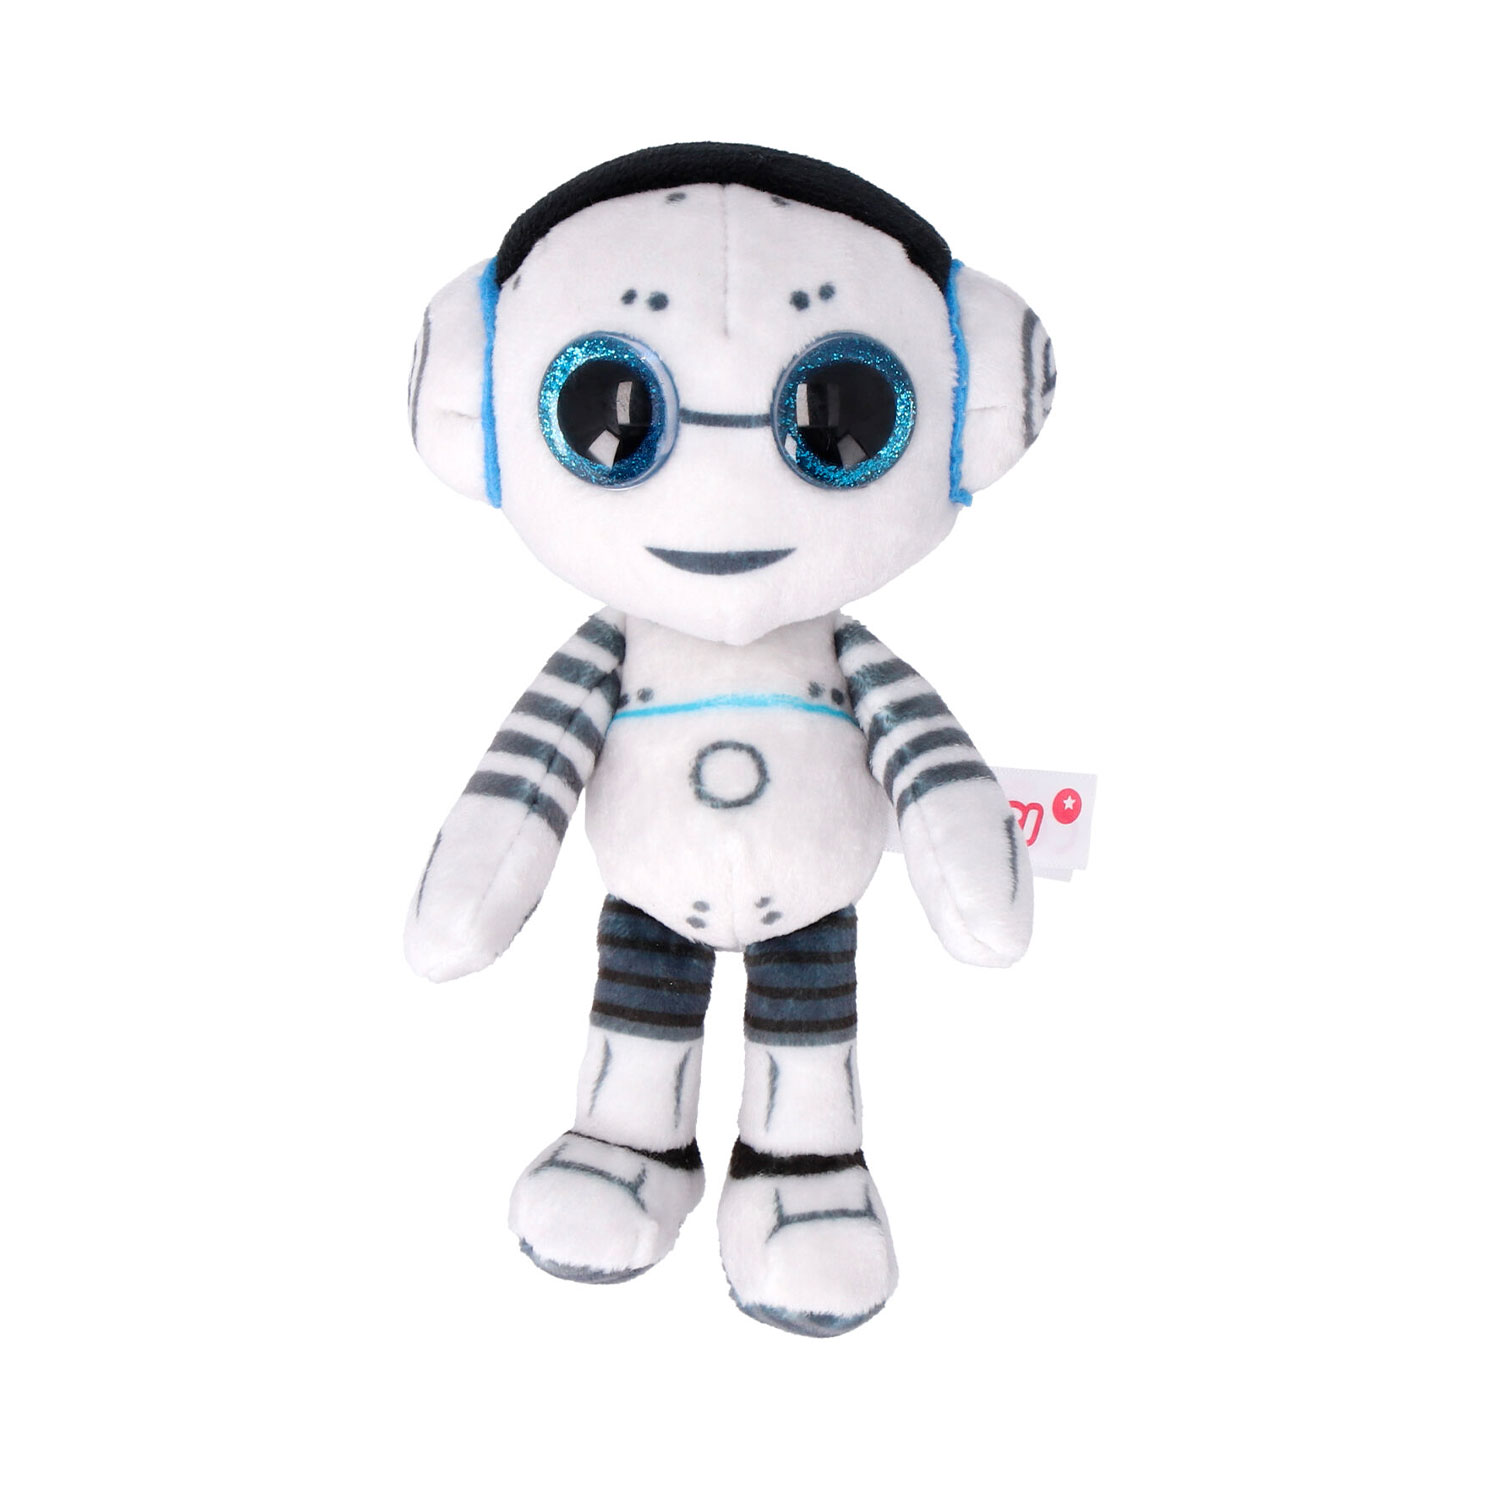 NICI Glubschi "Robbie Roboter" Plüschfigur 15 cm